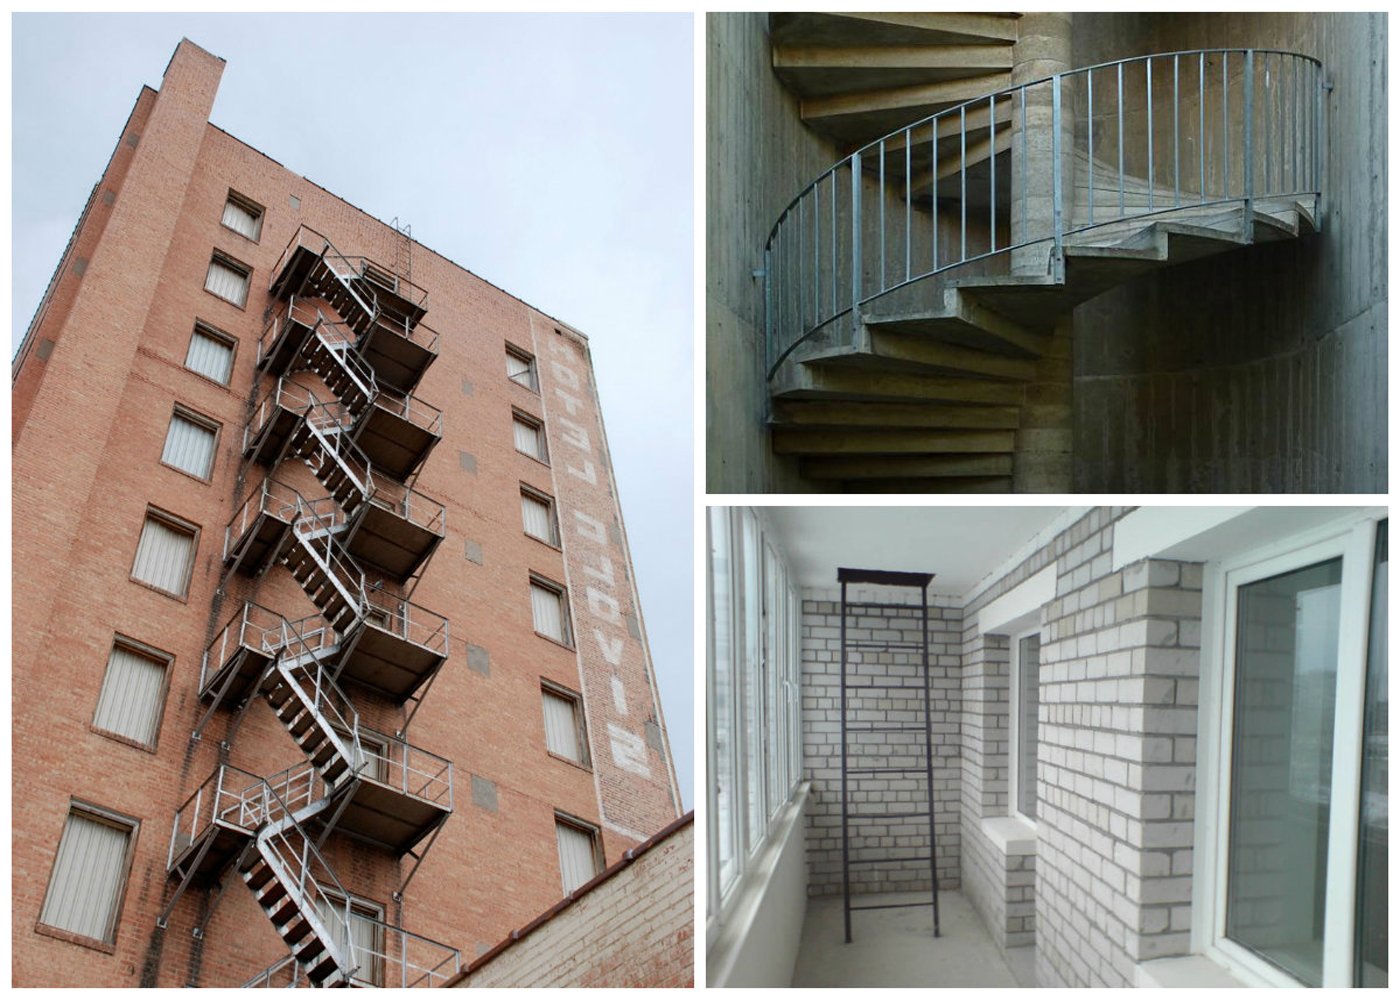 Балконы между домами. Пожарная эвакуационная лестница наружная. Незадымляемая лестничная клетка на фасаде. Наружные открытые лестницы. Пожарные лестницы в многоэтажных домах.